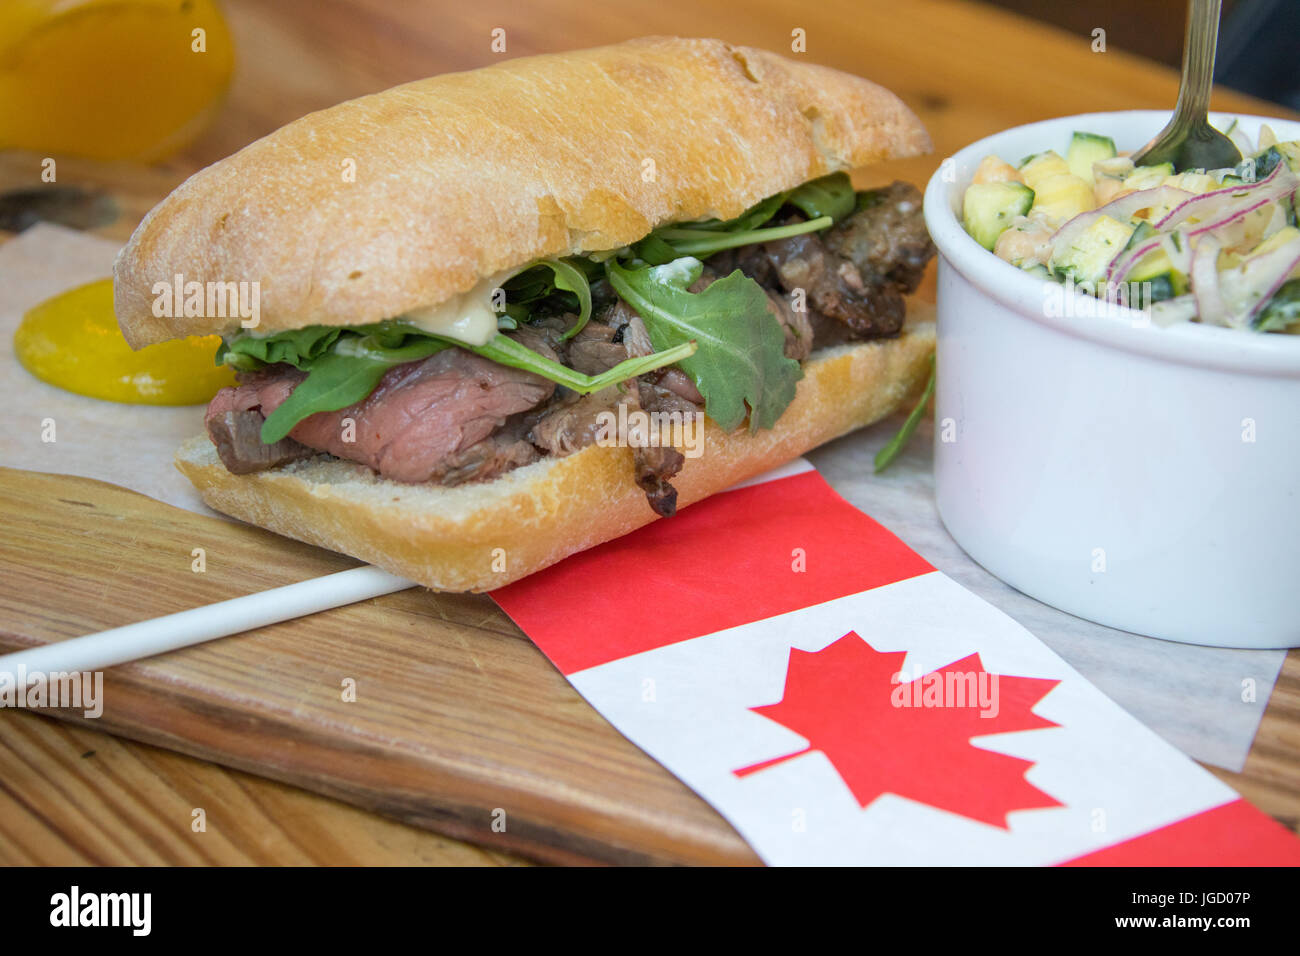 Juillet, 1, 2017, Canada 150 jours les côtes de sandwich à la viande et le pain, Restaurant, Vancouver, Canada Banque D'Images